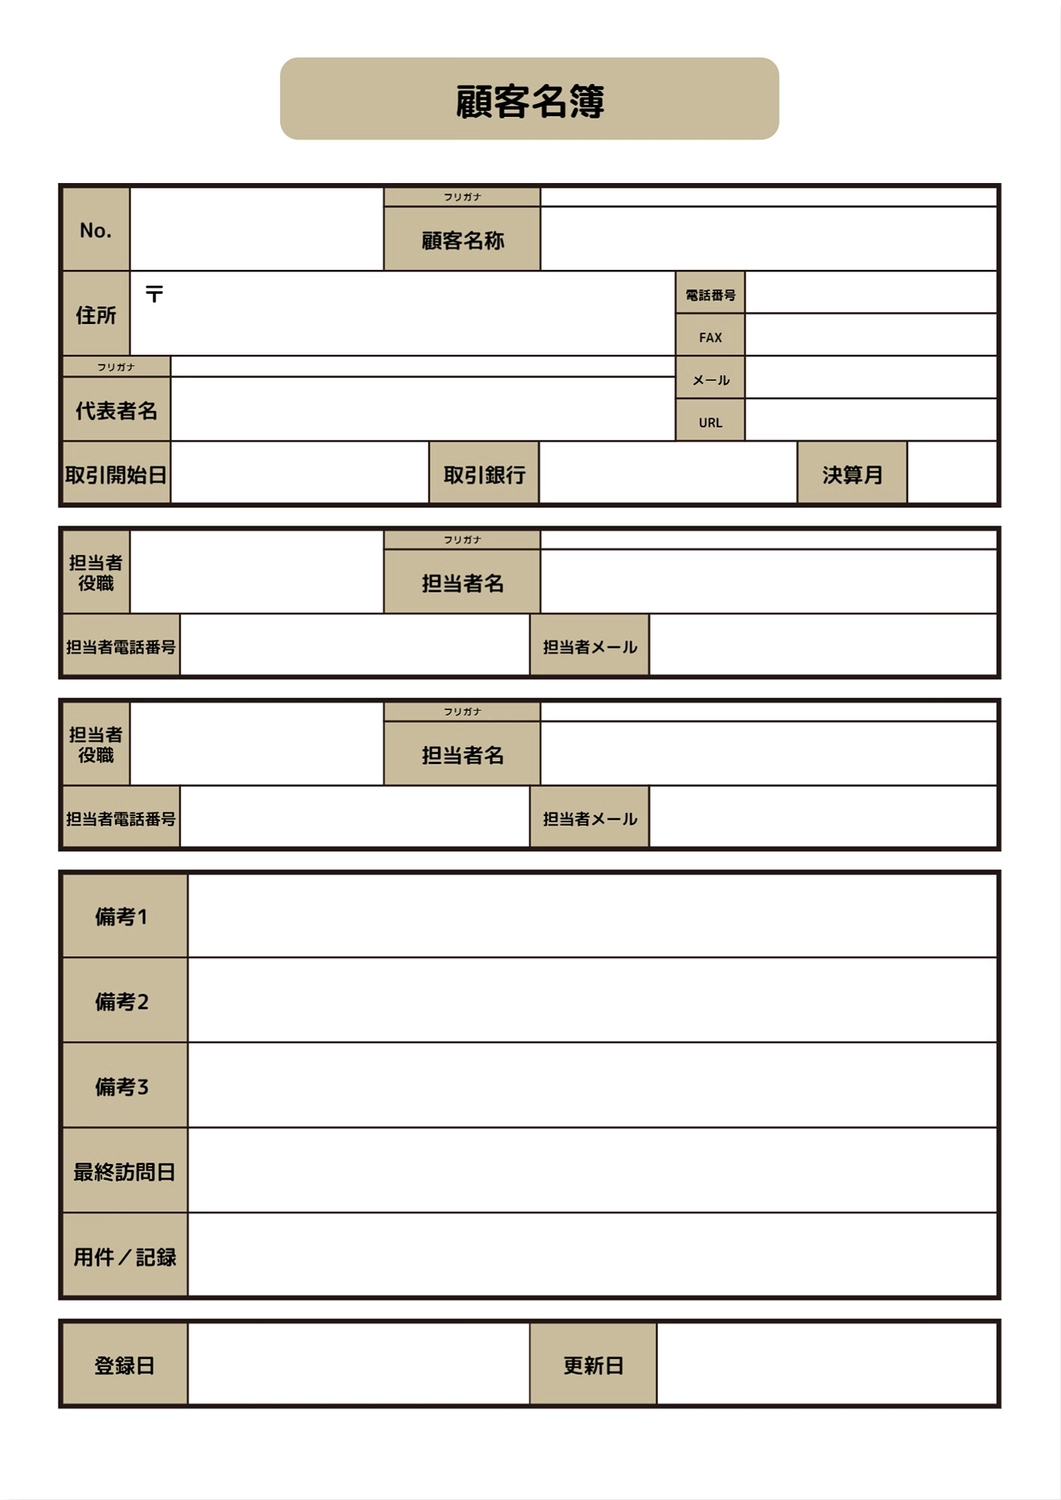 顧客名簿, Tài liệu A4, ngày đăng kí, ngày cập nhật, Tài liệu A4 mẫu